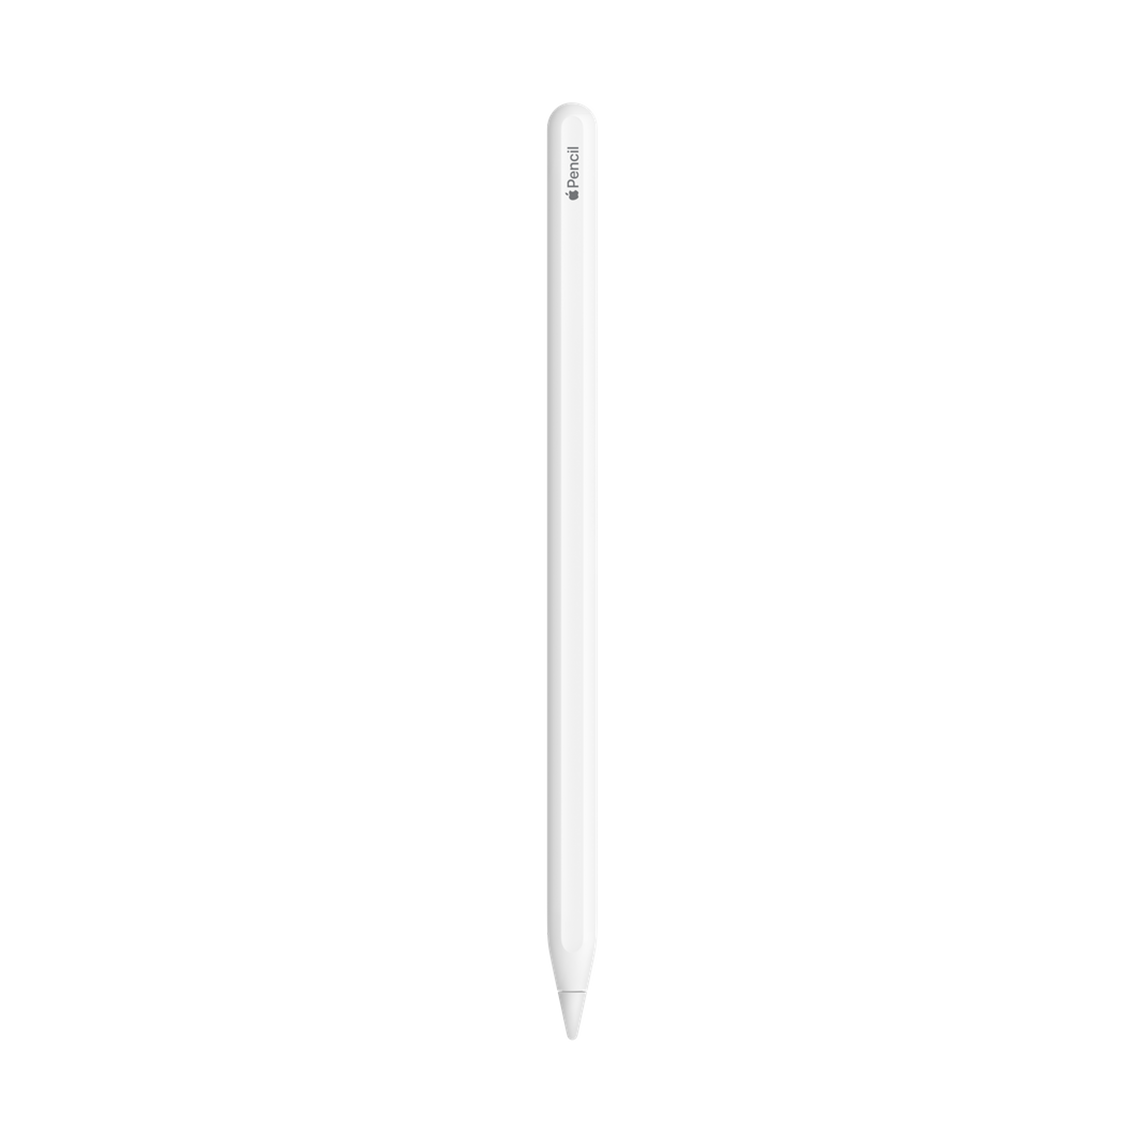 apple-ipad-pro-m1-11-inch-1tb-wi-ficellular